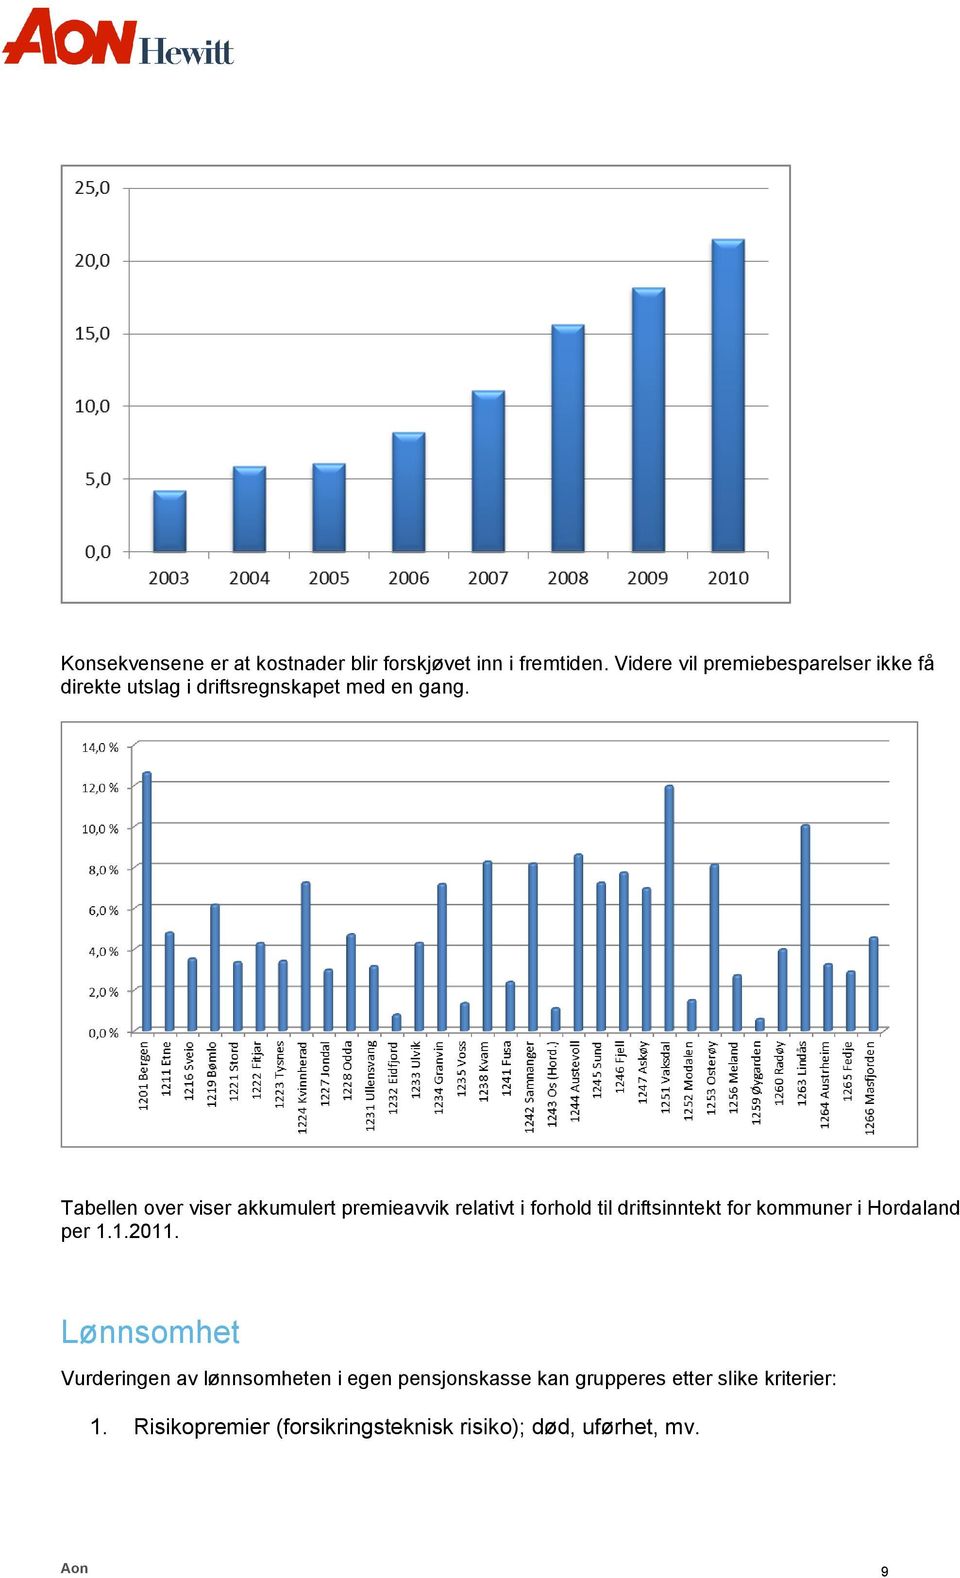 Tabellen over viser akkumulert premieavvik relativt i forhold til driftsinntekt for kommuner i Hordaland